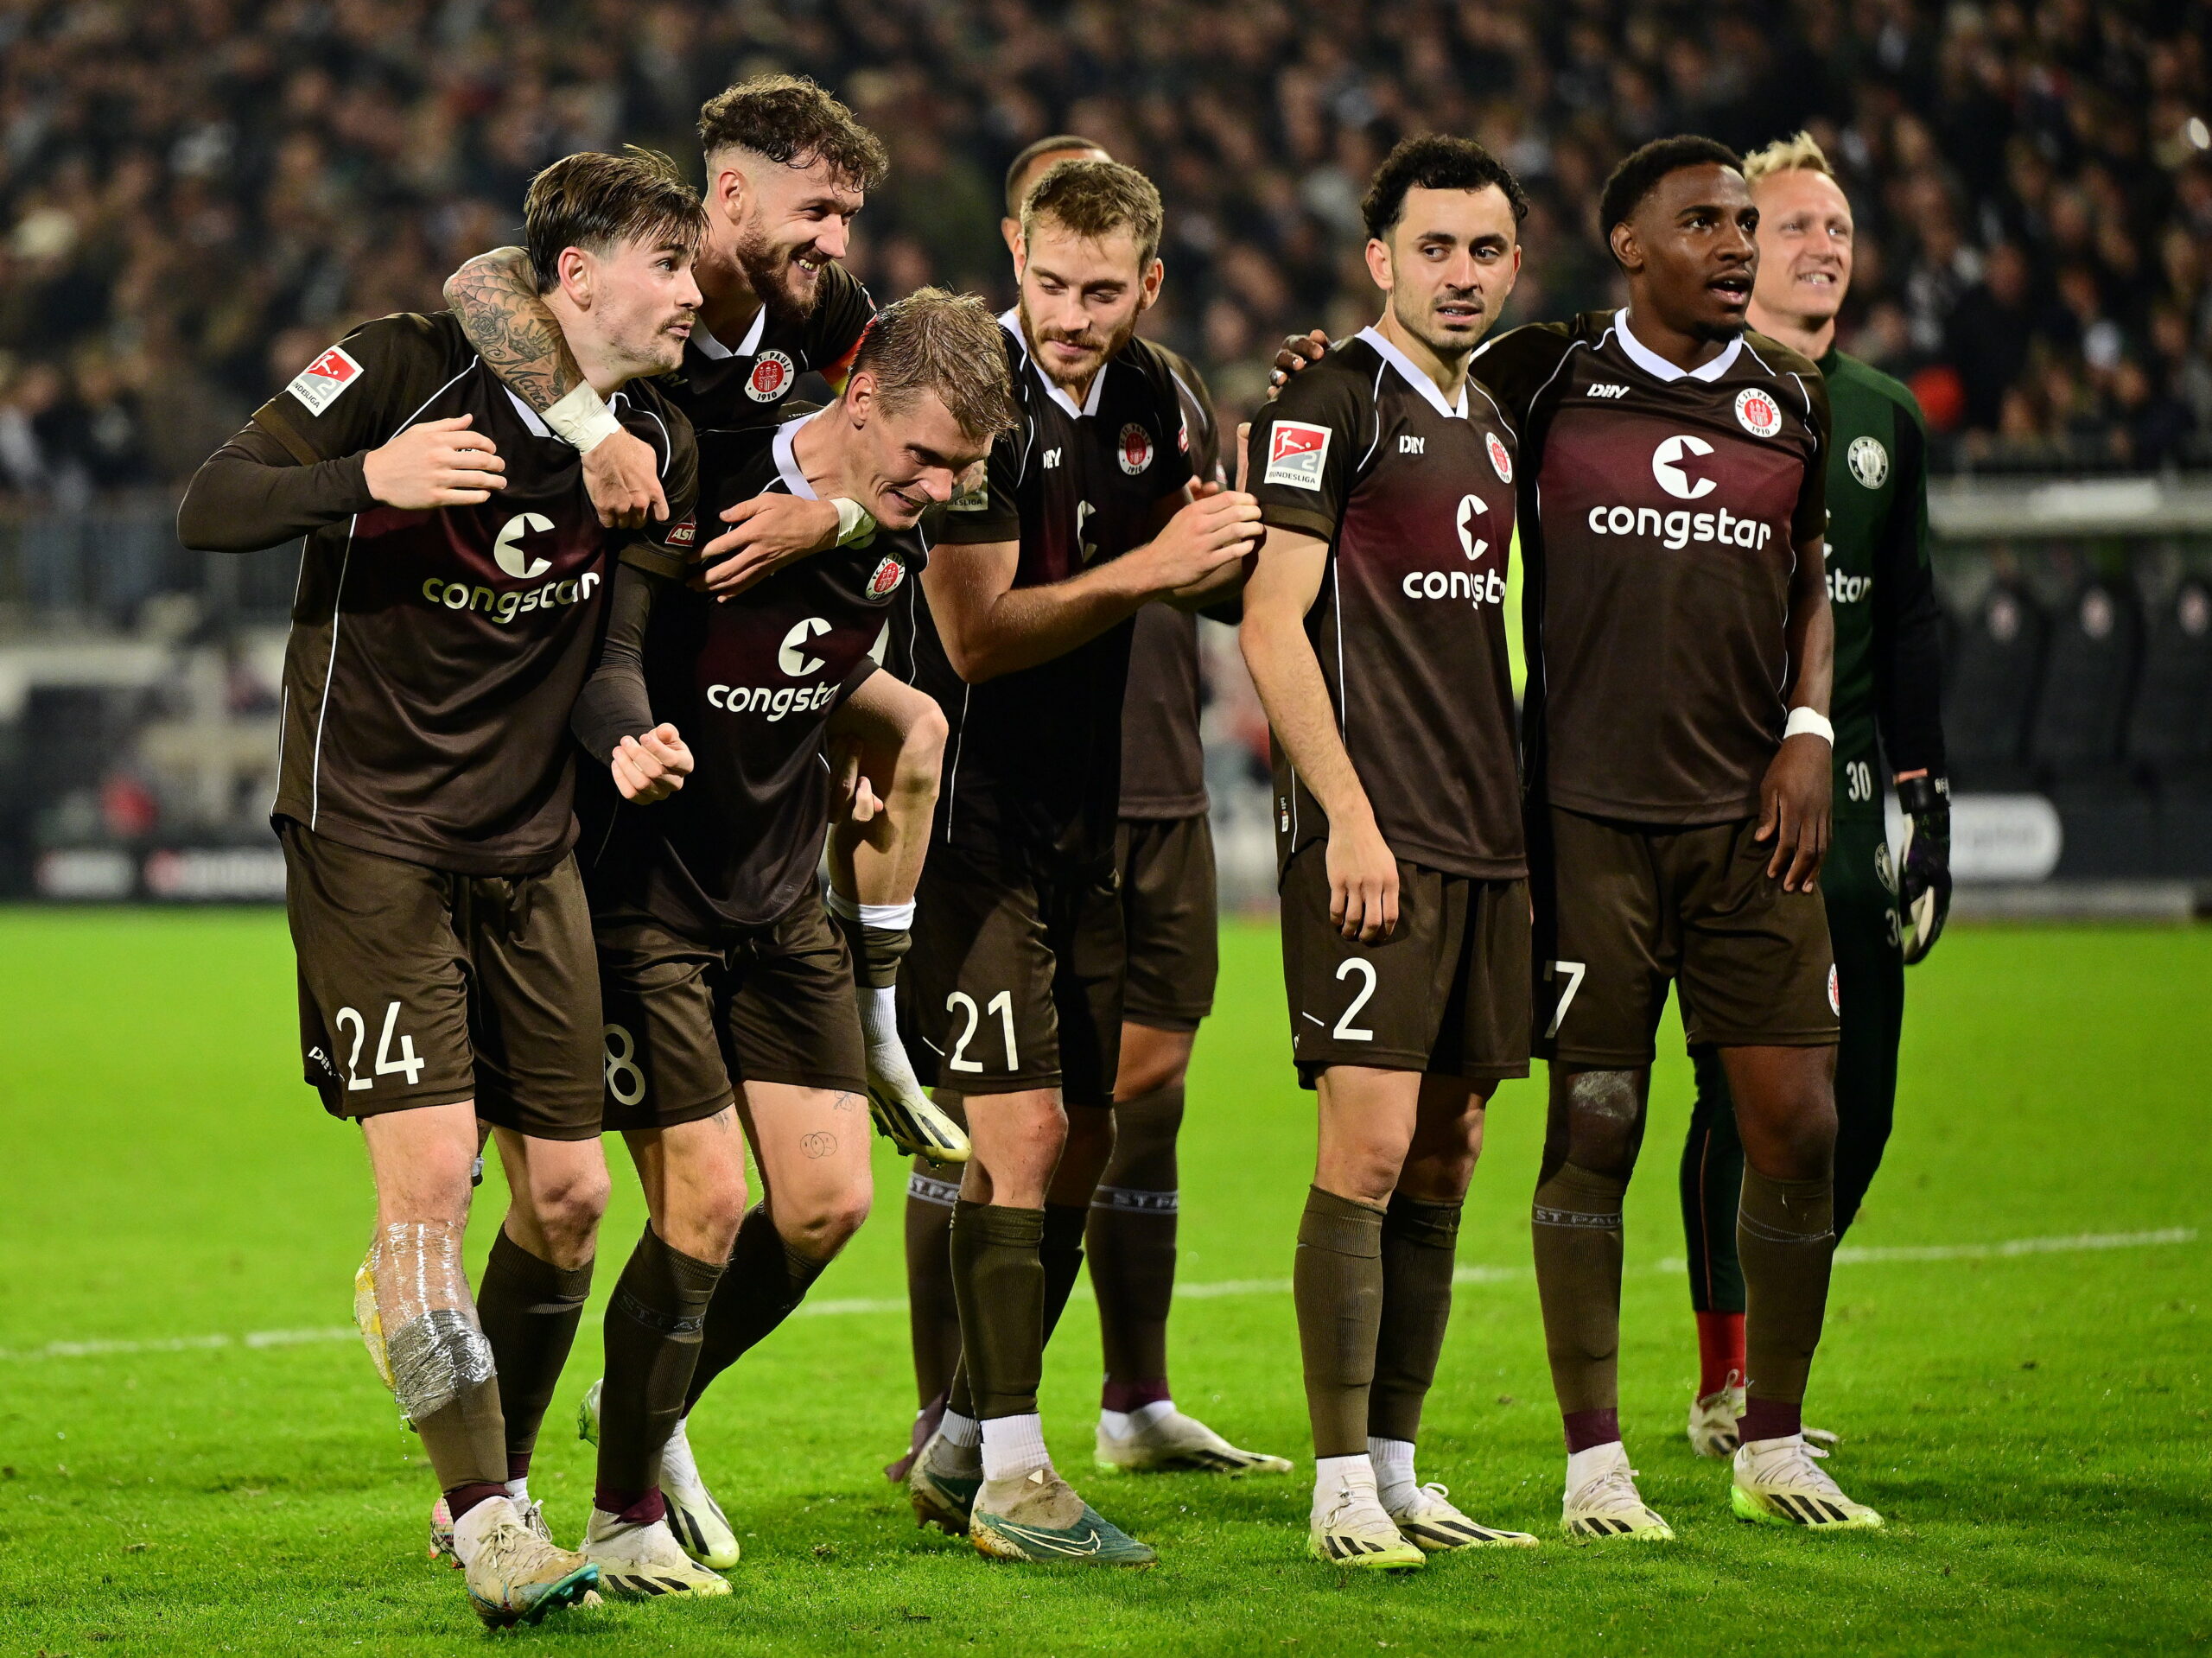 St. Paulis Profis feiern nach einem Sieg mit ihren Fans.